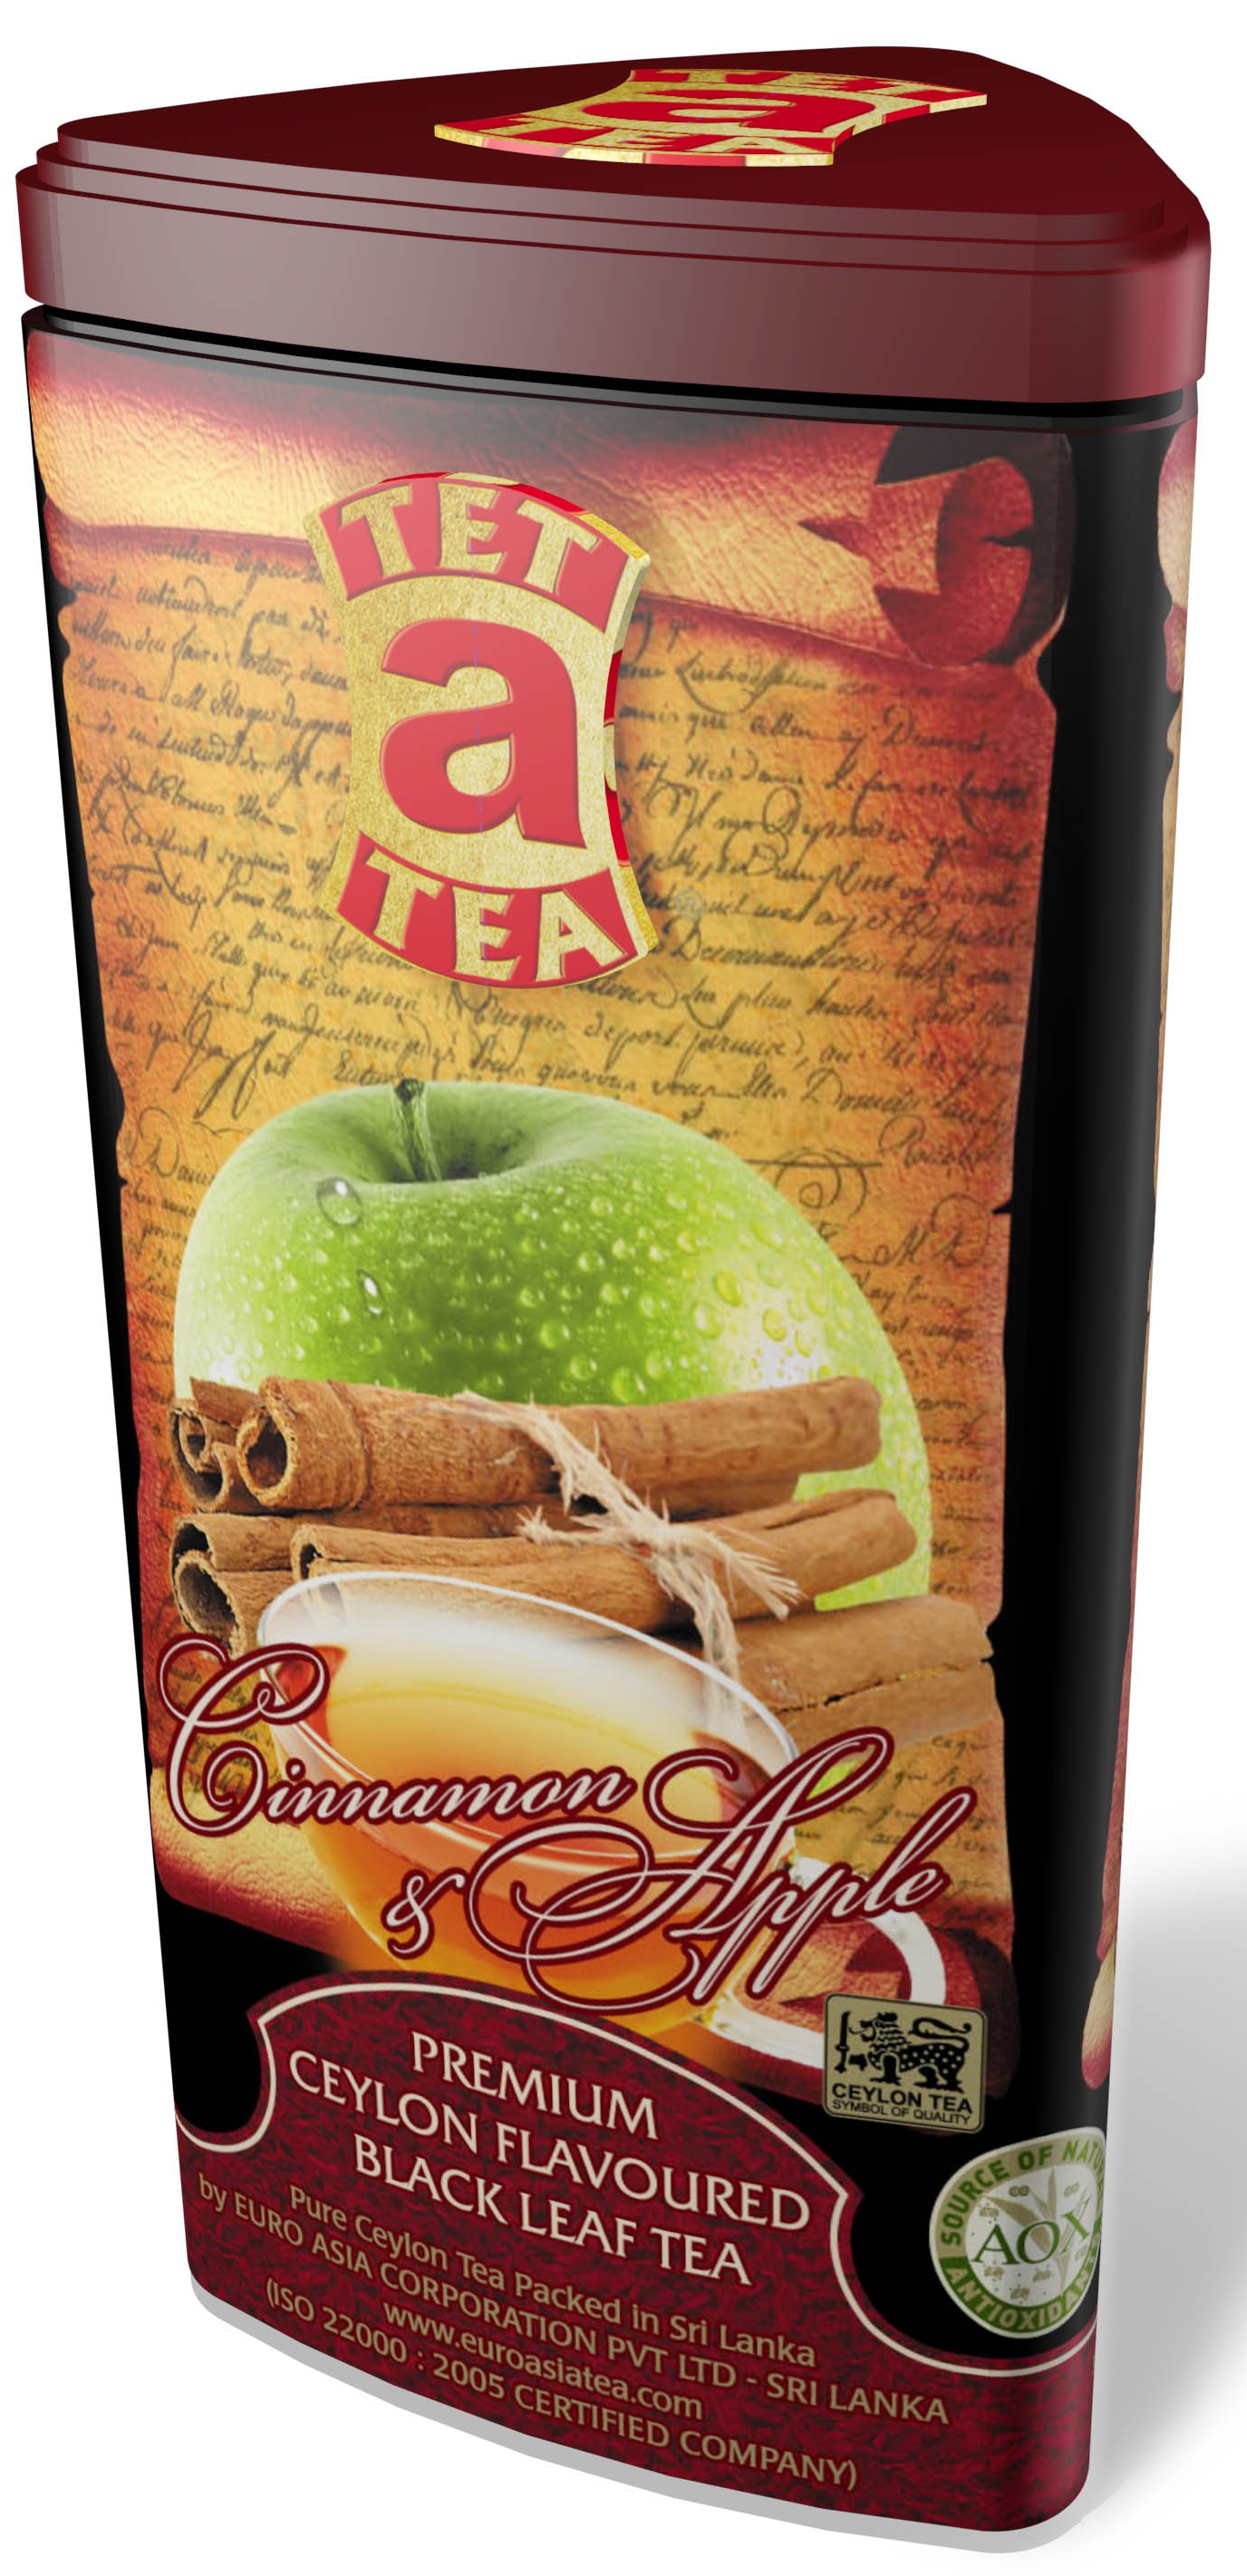 Čaj Tet a Tea Cinnamon & Apple - sypaný černý čaj s příchutí jablka a skořice v plechové